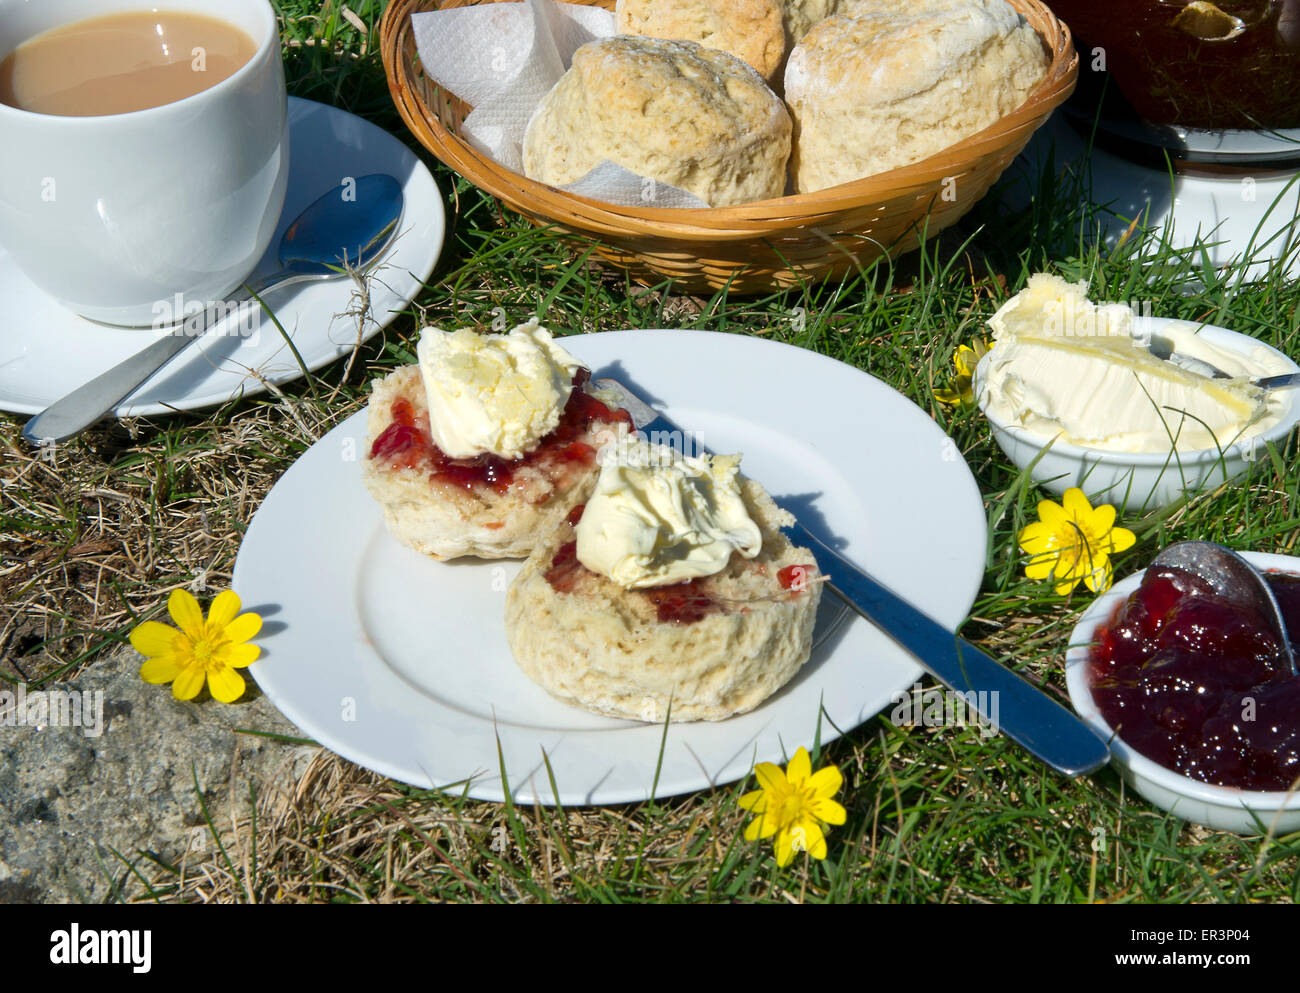 Traditionellen kornischen Sahne Tee mit Scones, kornische Gegeronnene Creme, Marmelade und tea.a UK Cornwall Essen Tee Essen Ofen backen Backen Stockfoto